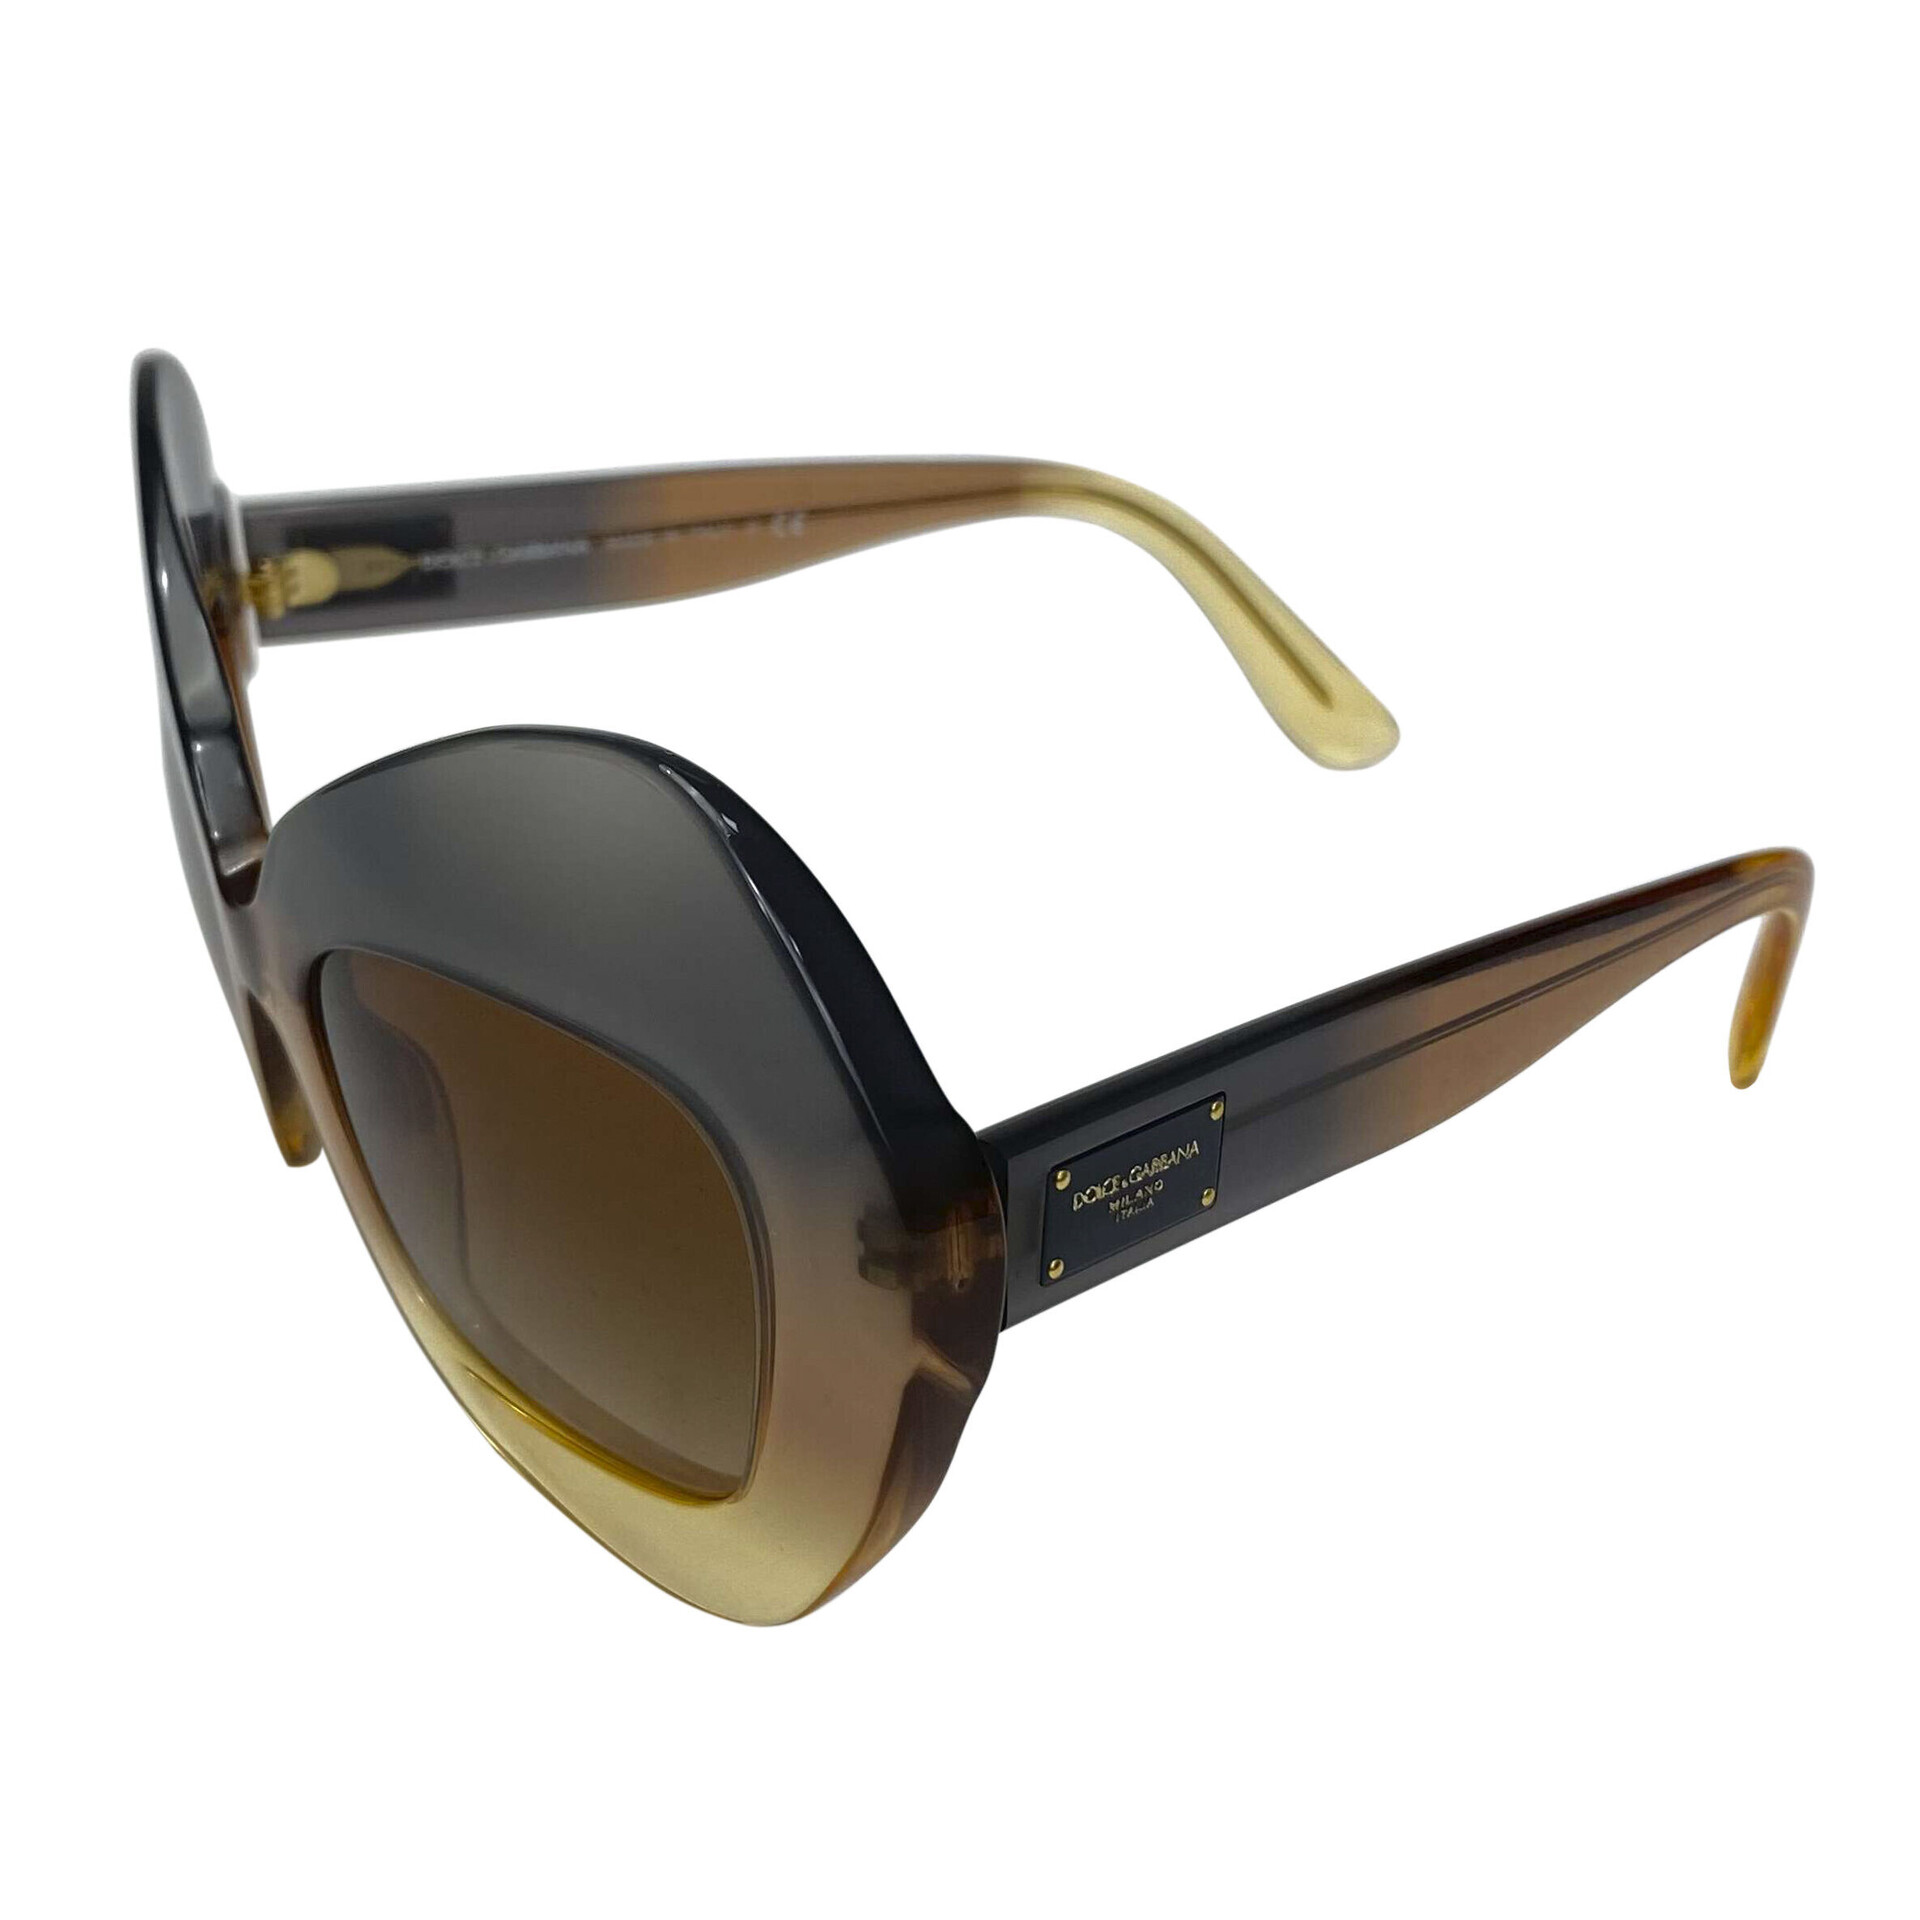 Óculos de Sol Dolce & Gabbana - DG 4290